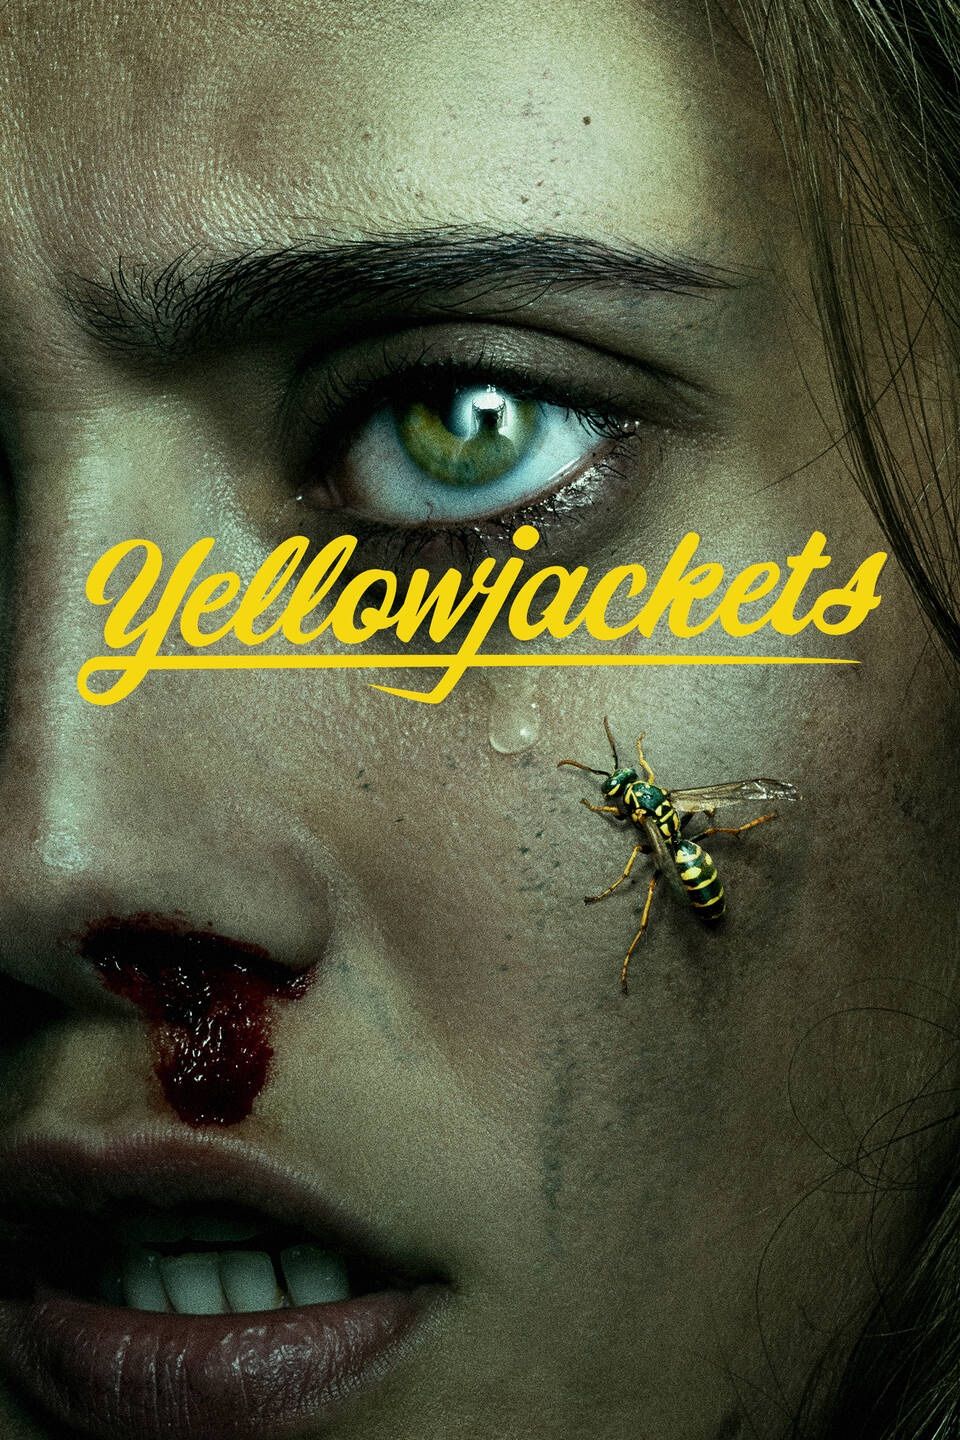 Pôster do programa de TV Yellowjackets com um jaqueta amarela rastejando no rosto de uma jovem